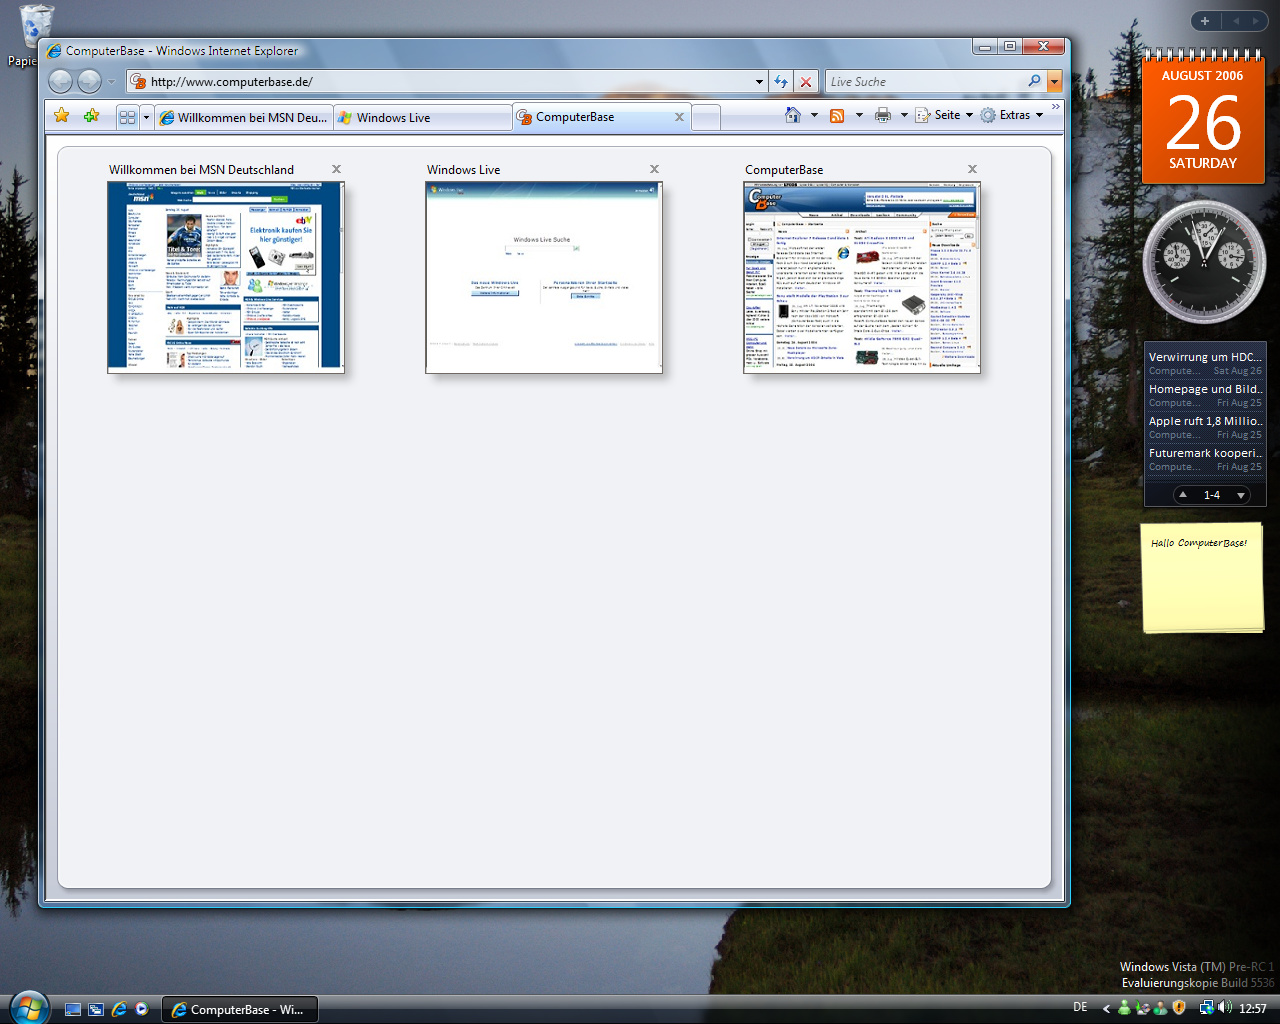 Windows Vista Build 5536 - Internet Explorer 7.0 mit kleiner Seitenvorschau